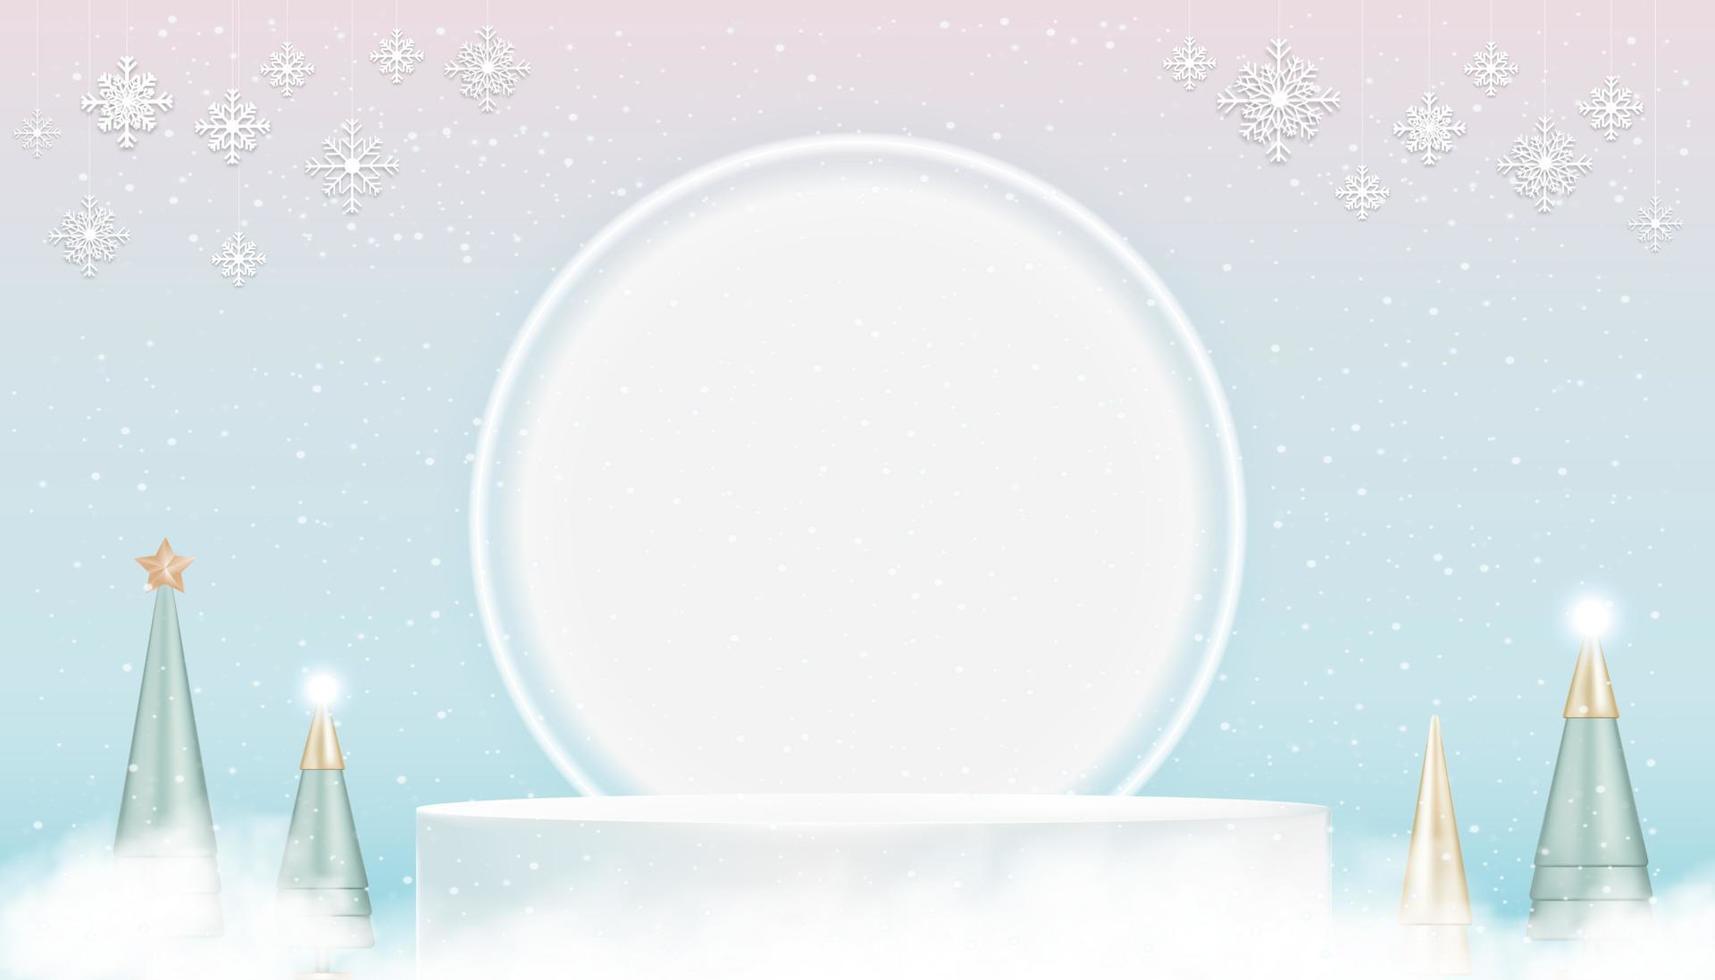 afficher le podium de piédestal 3d avec néon, arbre conique et flocons de neige suspendus sur fond de ciel rose, bleu, éléments de conception vectorielle pour carte de noël.toile de fond pour la vente de vacances d'hiver, concept de promotion vecteur